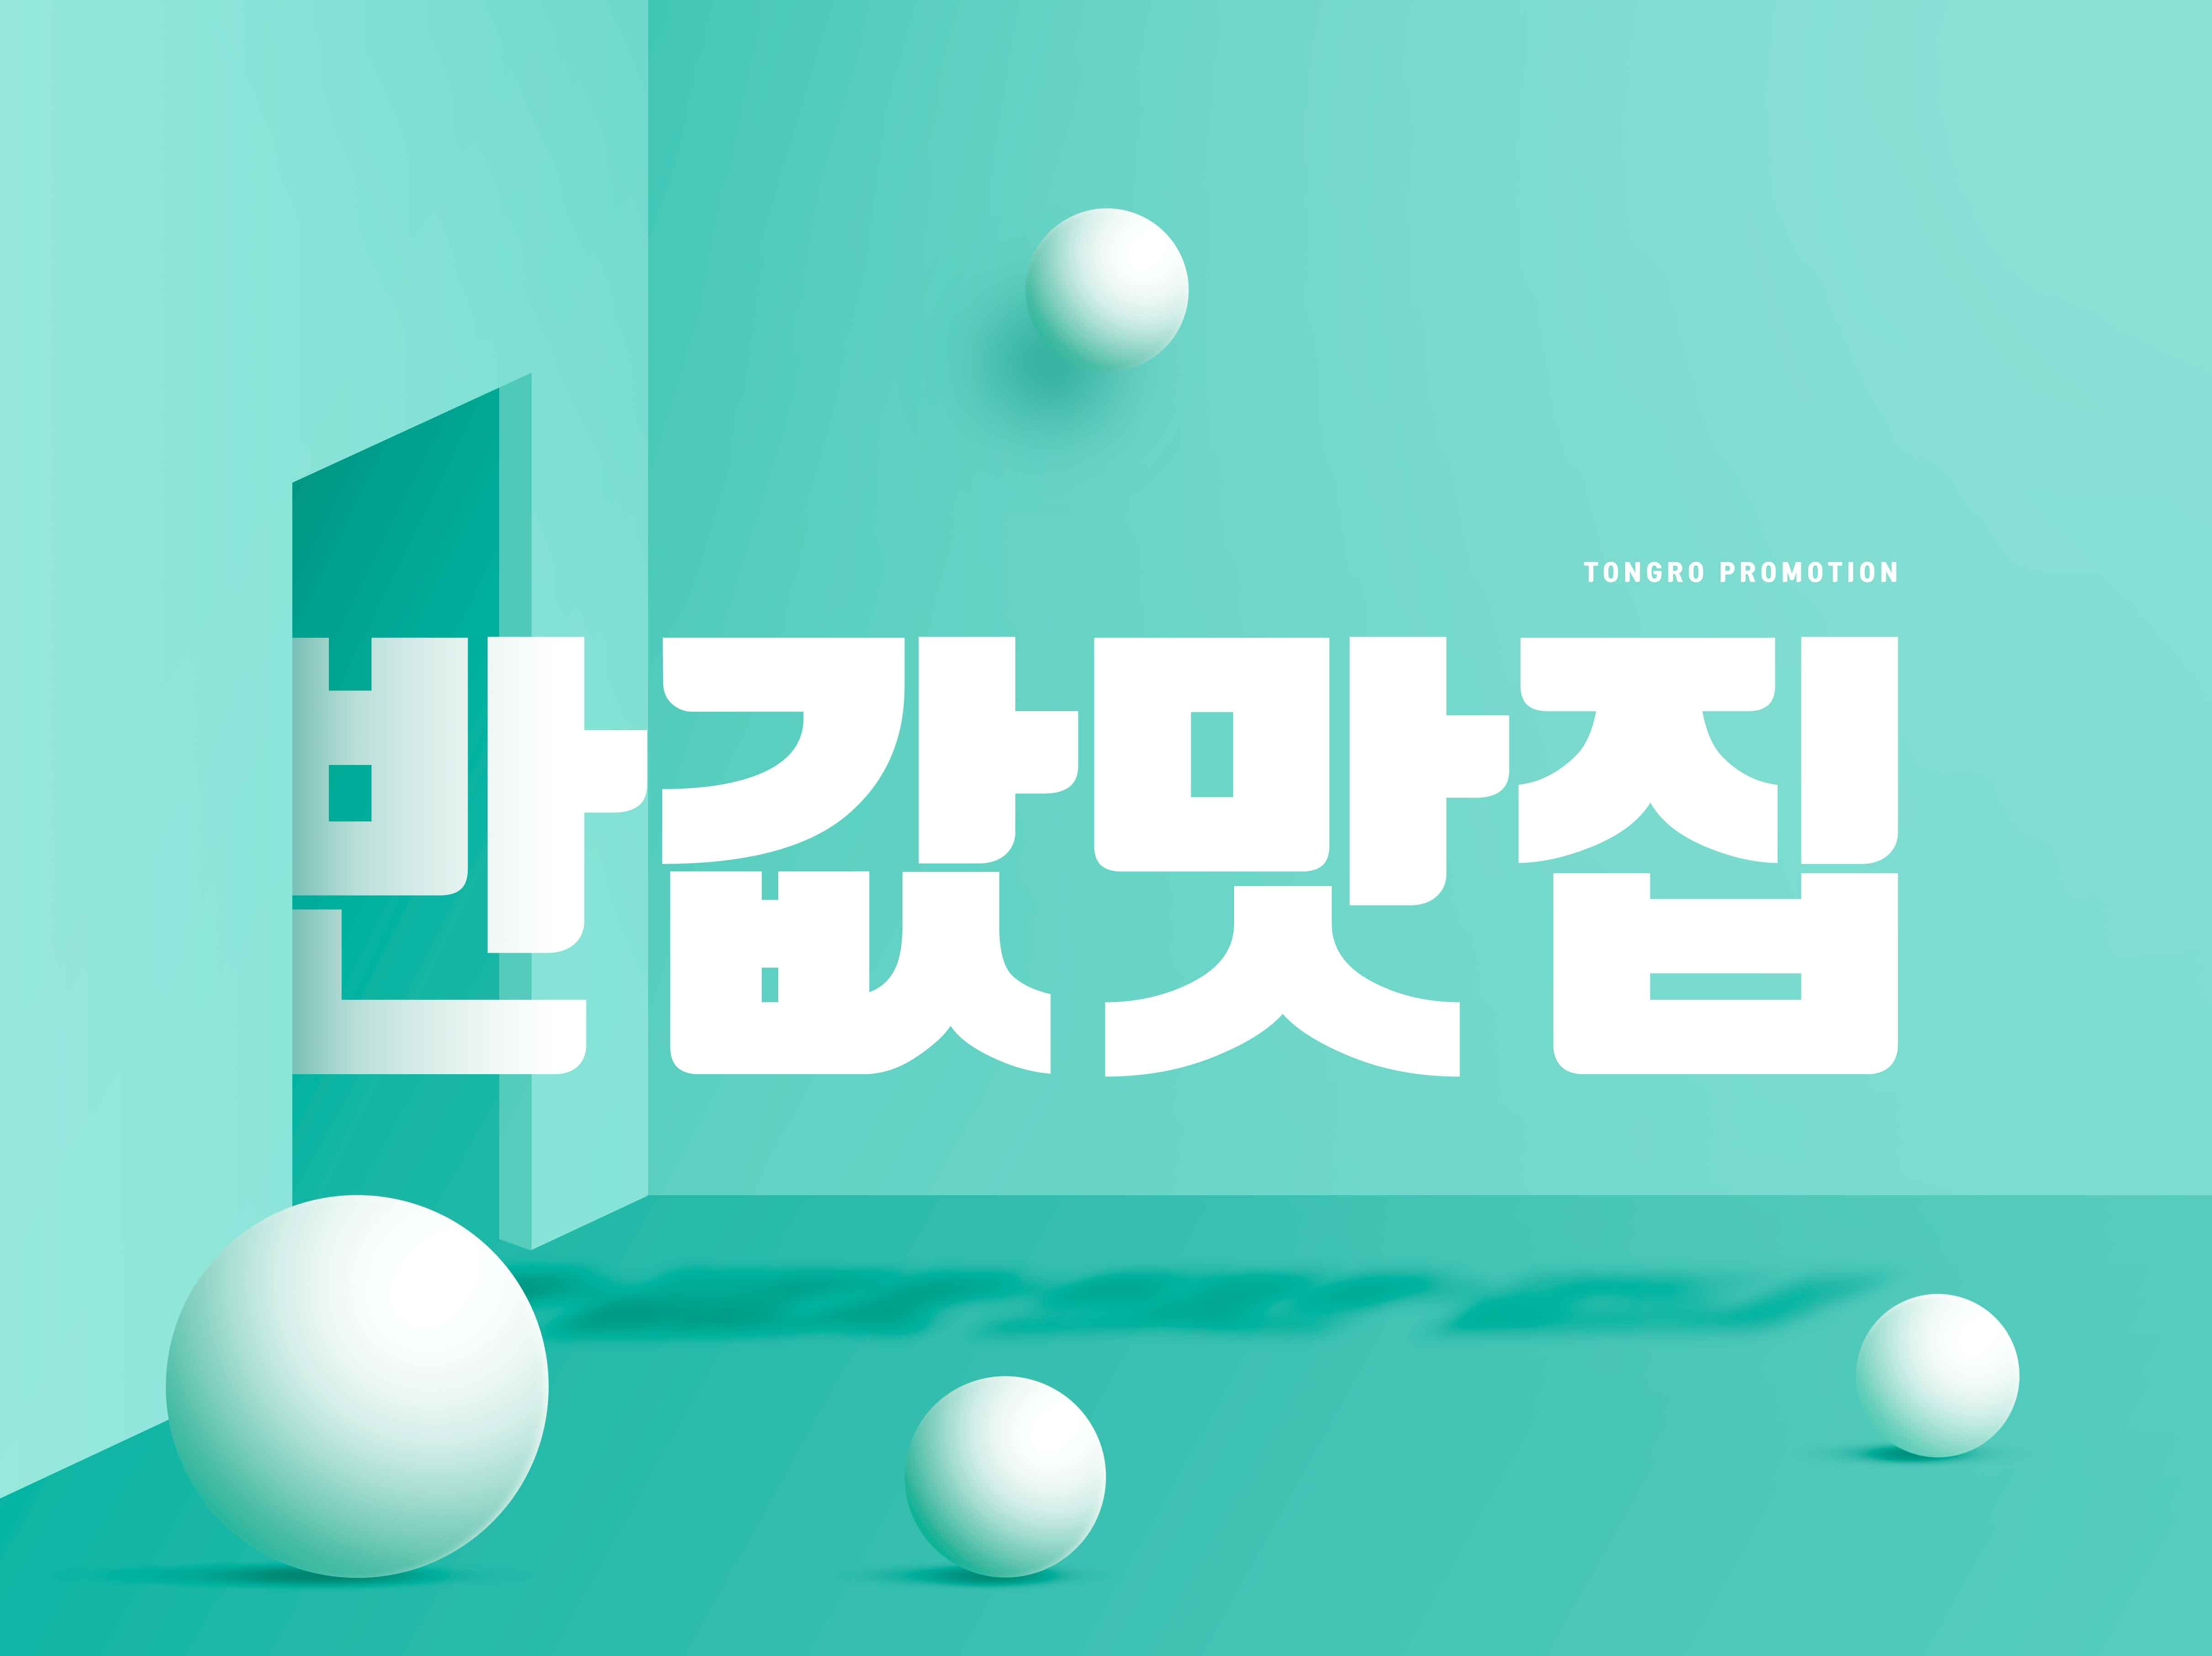 创意几何元素促销海报PSD素材蚂蚁素材精选韩国素材合集插图(4)